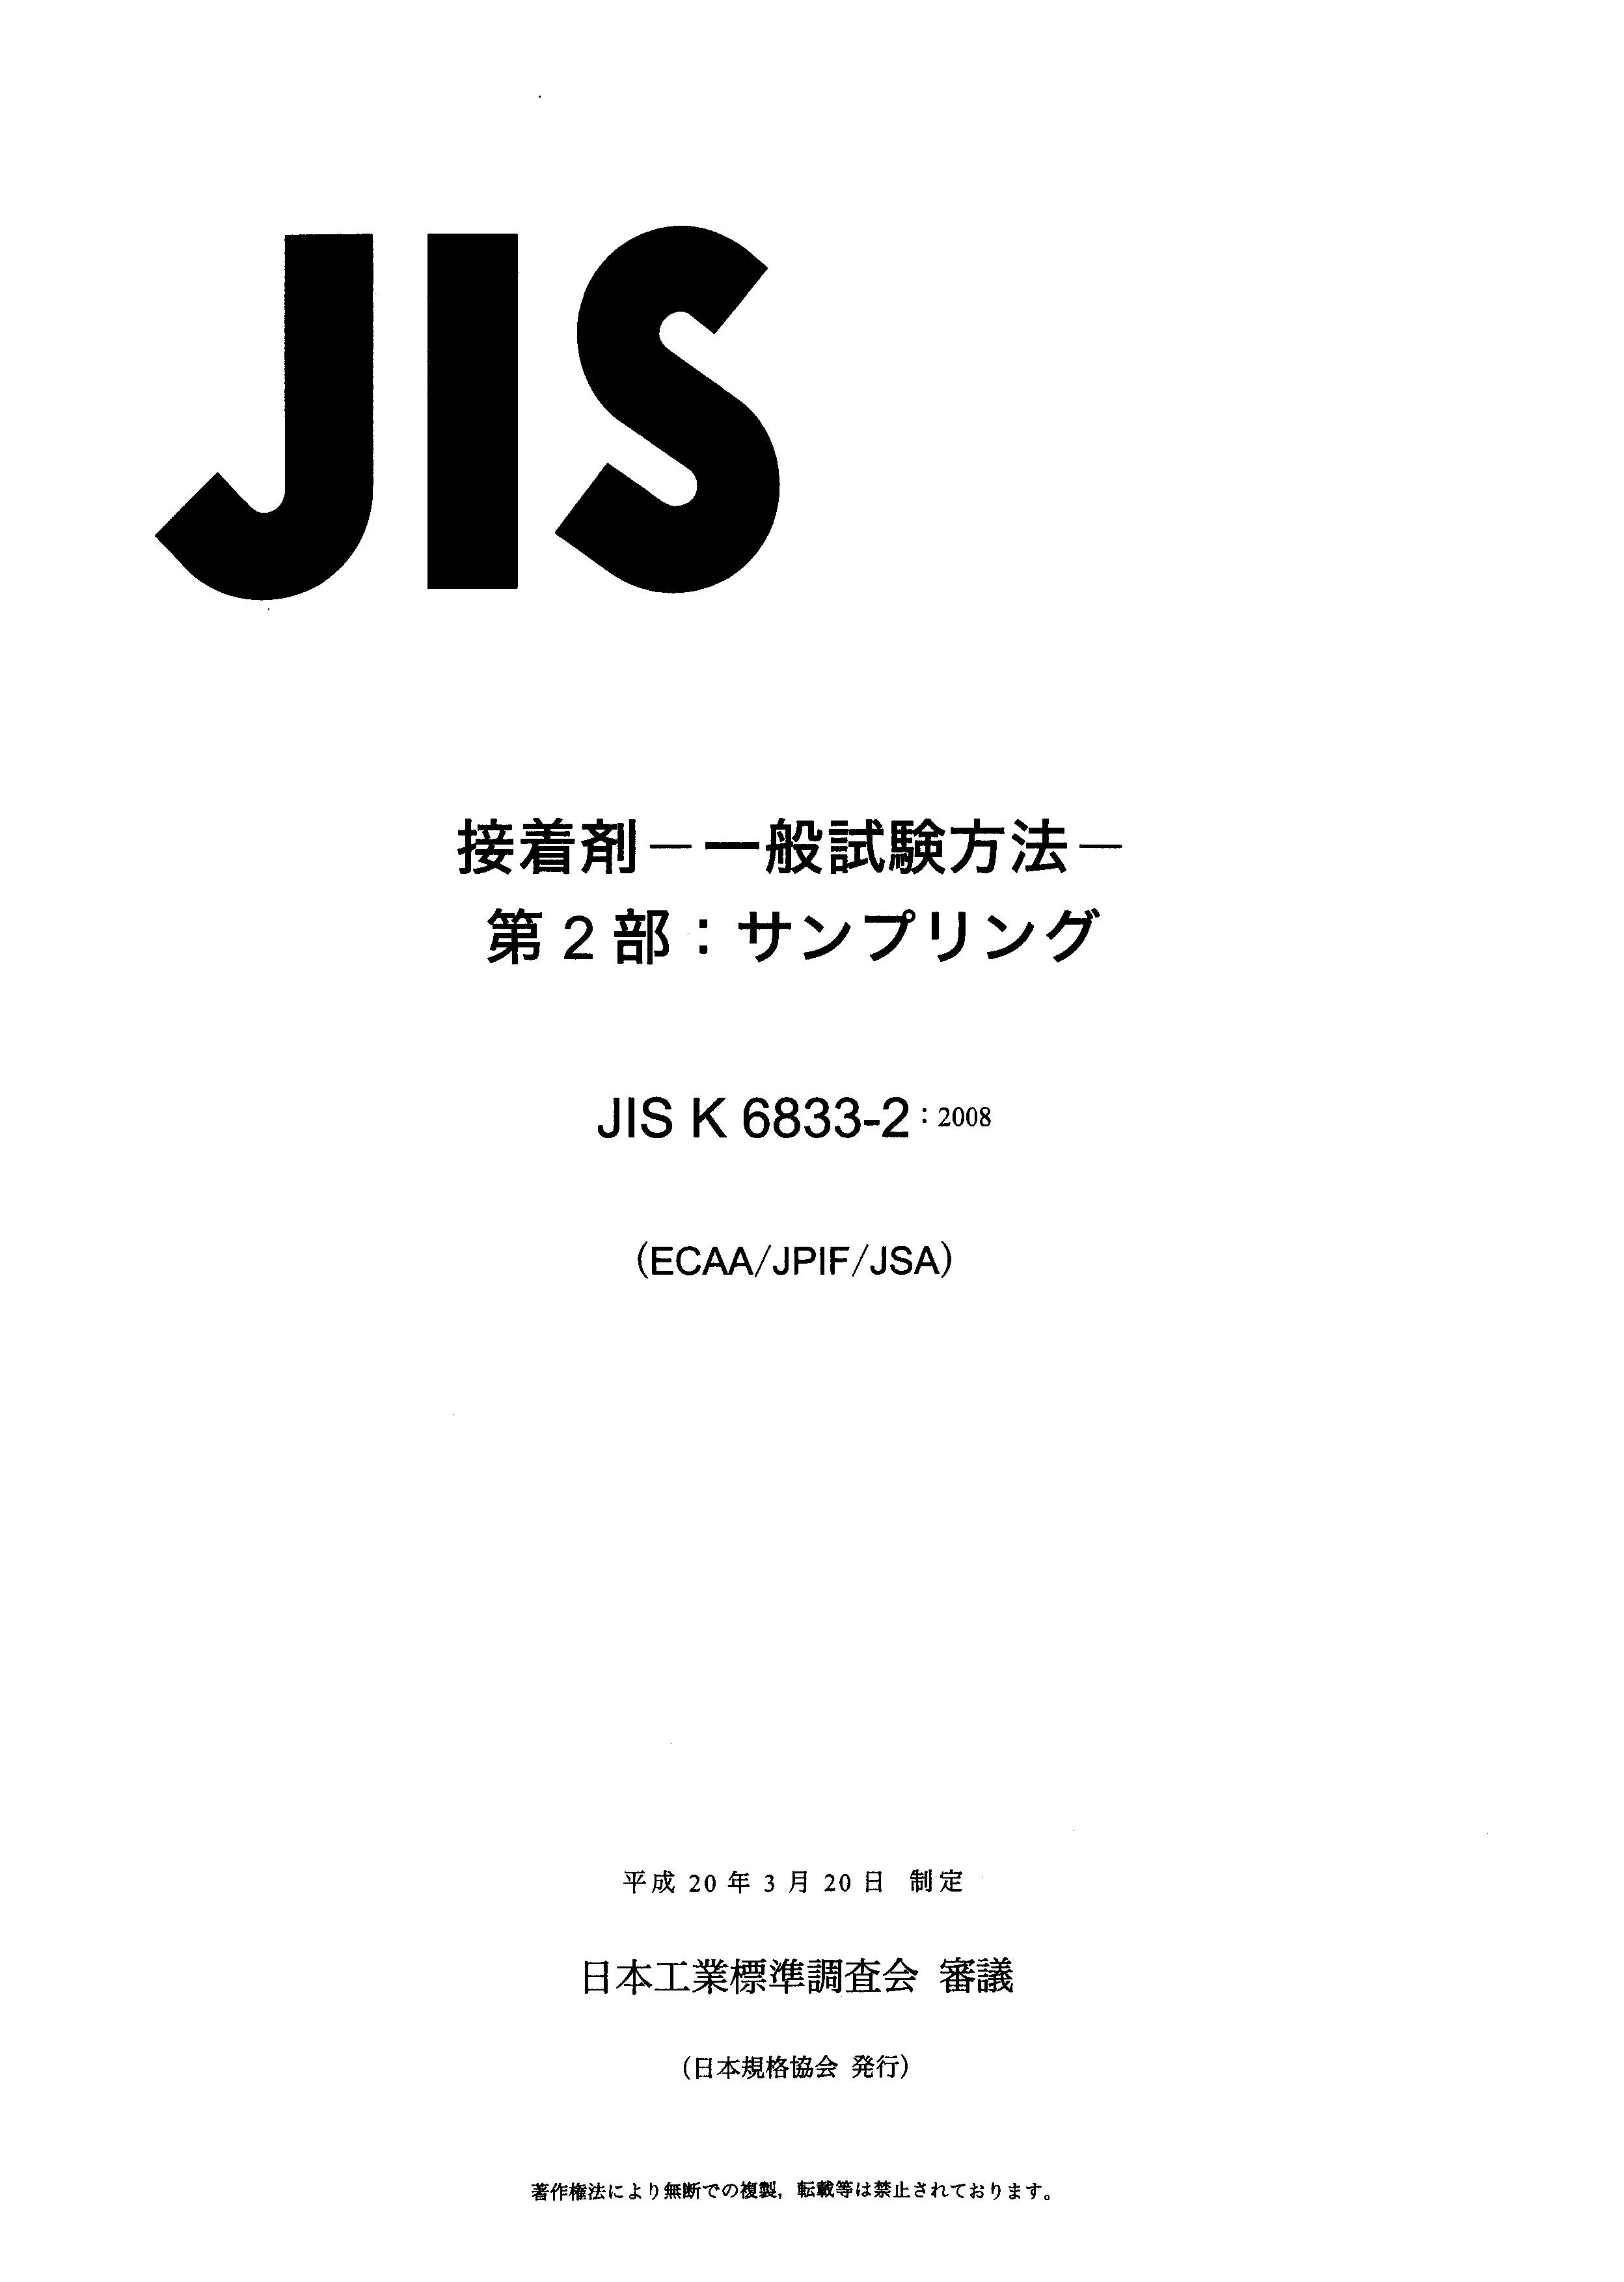 JIS K 6833-2:2008封面图